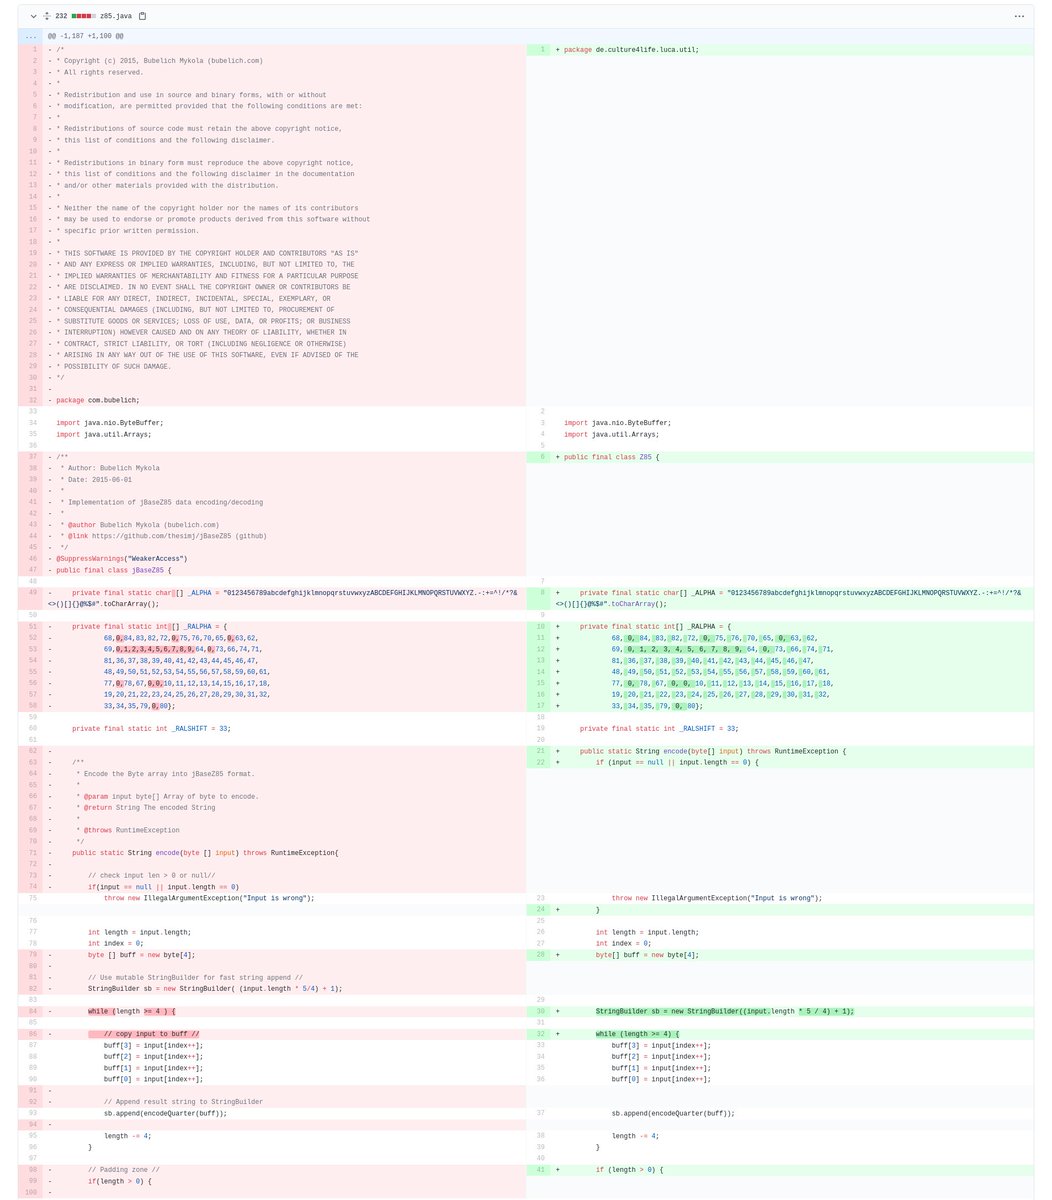 Aus den Drukos: Sie haben Open-Source-Code (BSD-Lizenz) einfach übernommen. Außer dem Entfernen von Lizenzhinweisen/Kommentaren und Whitespaceänderungen wurde nichts geändert. Damit wurde vmtl. gegen dessen Lizenz verstossen. https://github.com/thesimj/jBaseZ85/blob/master/src/main/java/com/bubelich/jBaseZ85.java vs.  https://gitlab.com/lucaapp/android/-/blob/master/Luca/app/src/main/java/de/culture4life/luca/util/Z85.java